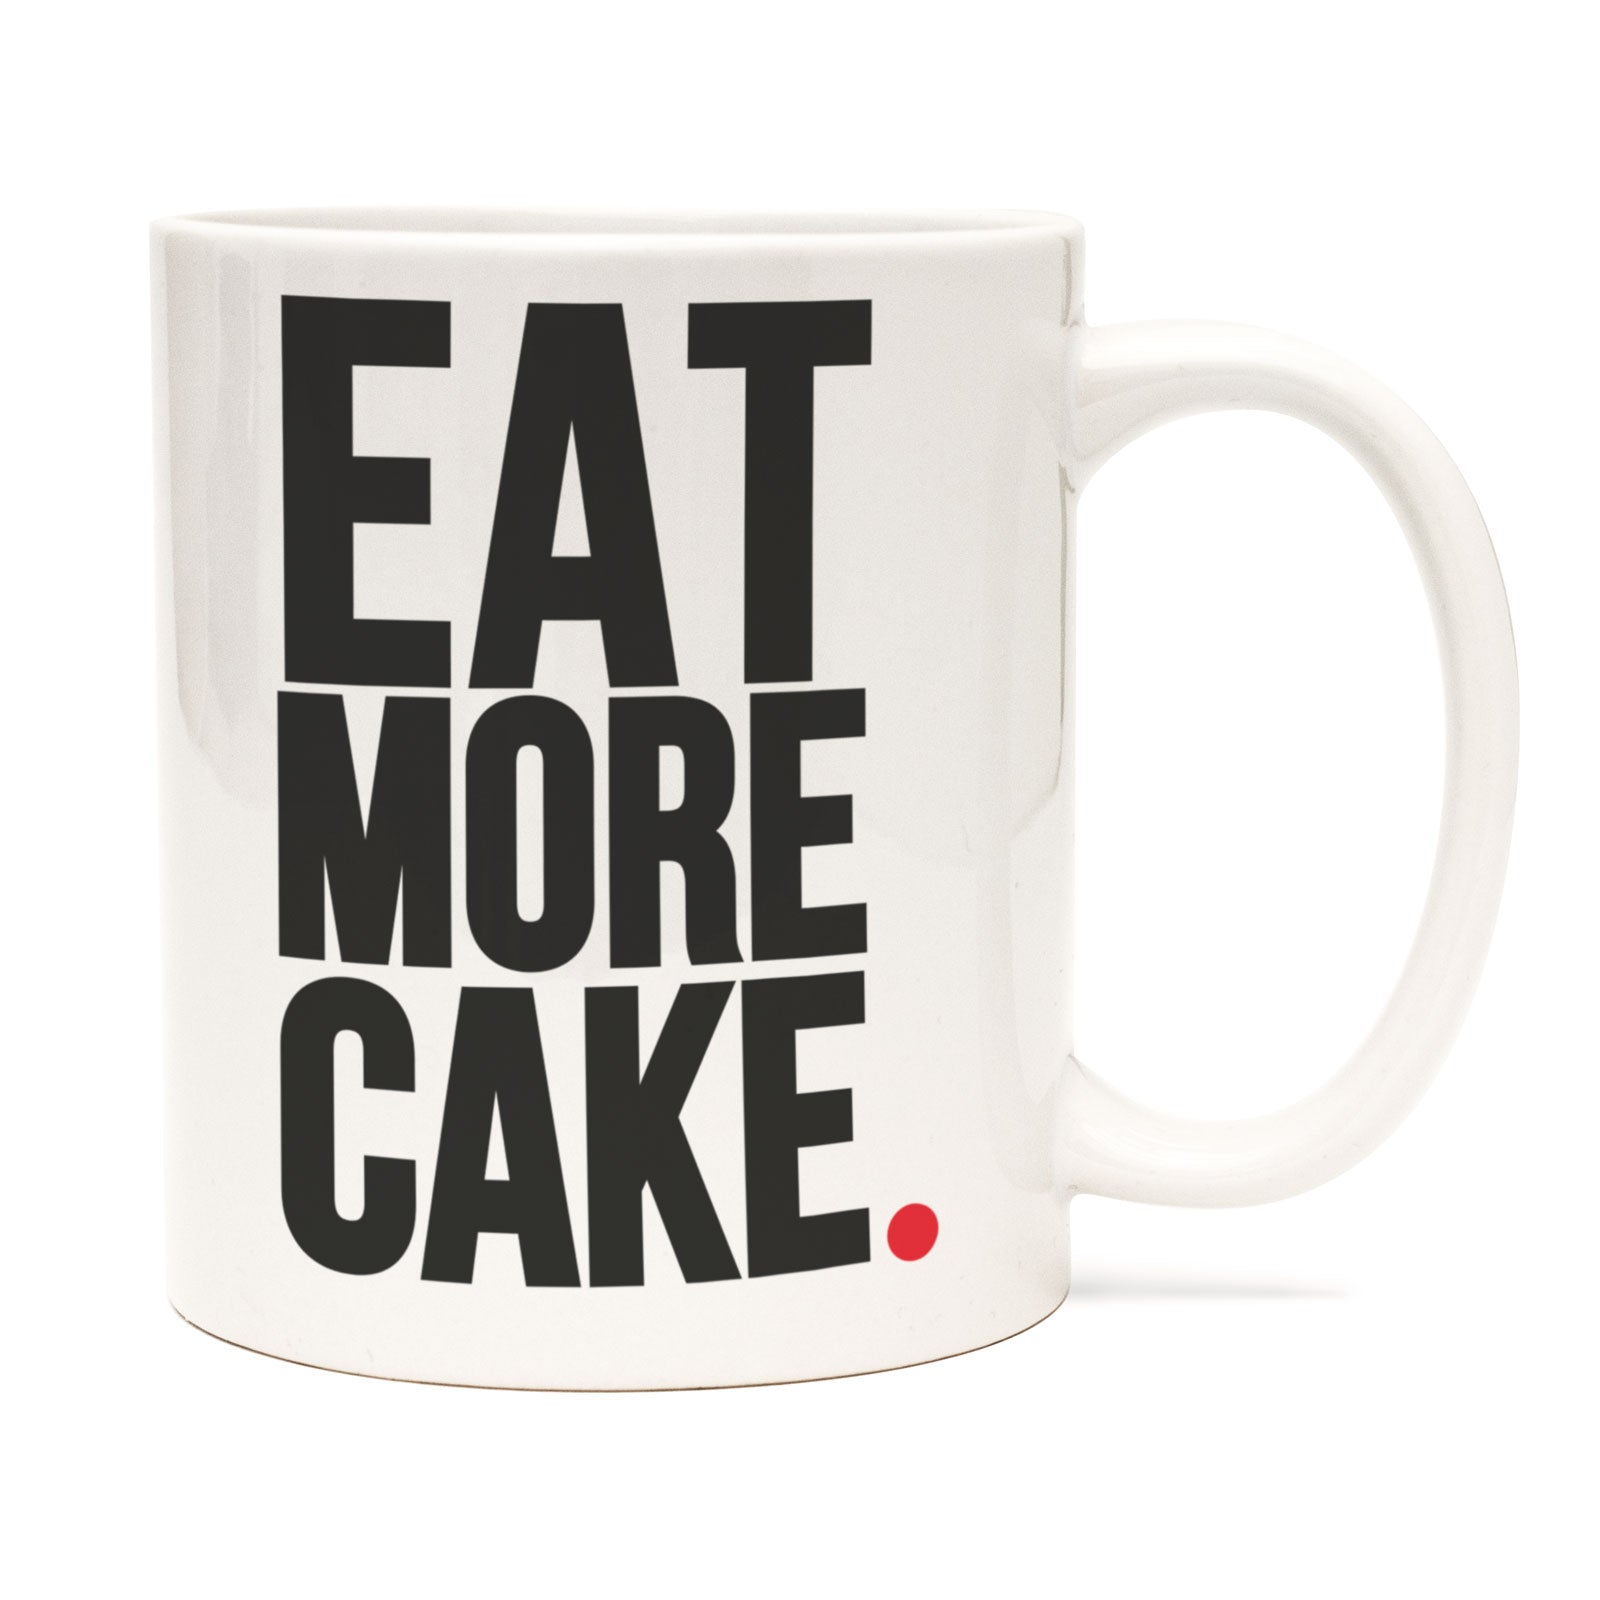 Eat More Cake, Mug